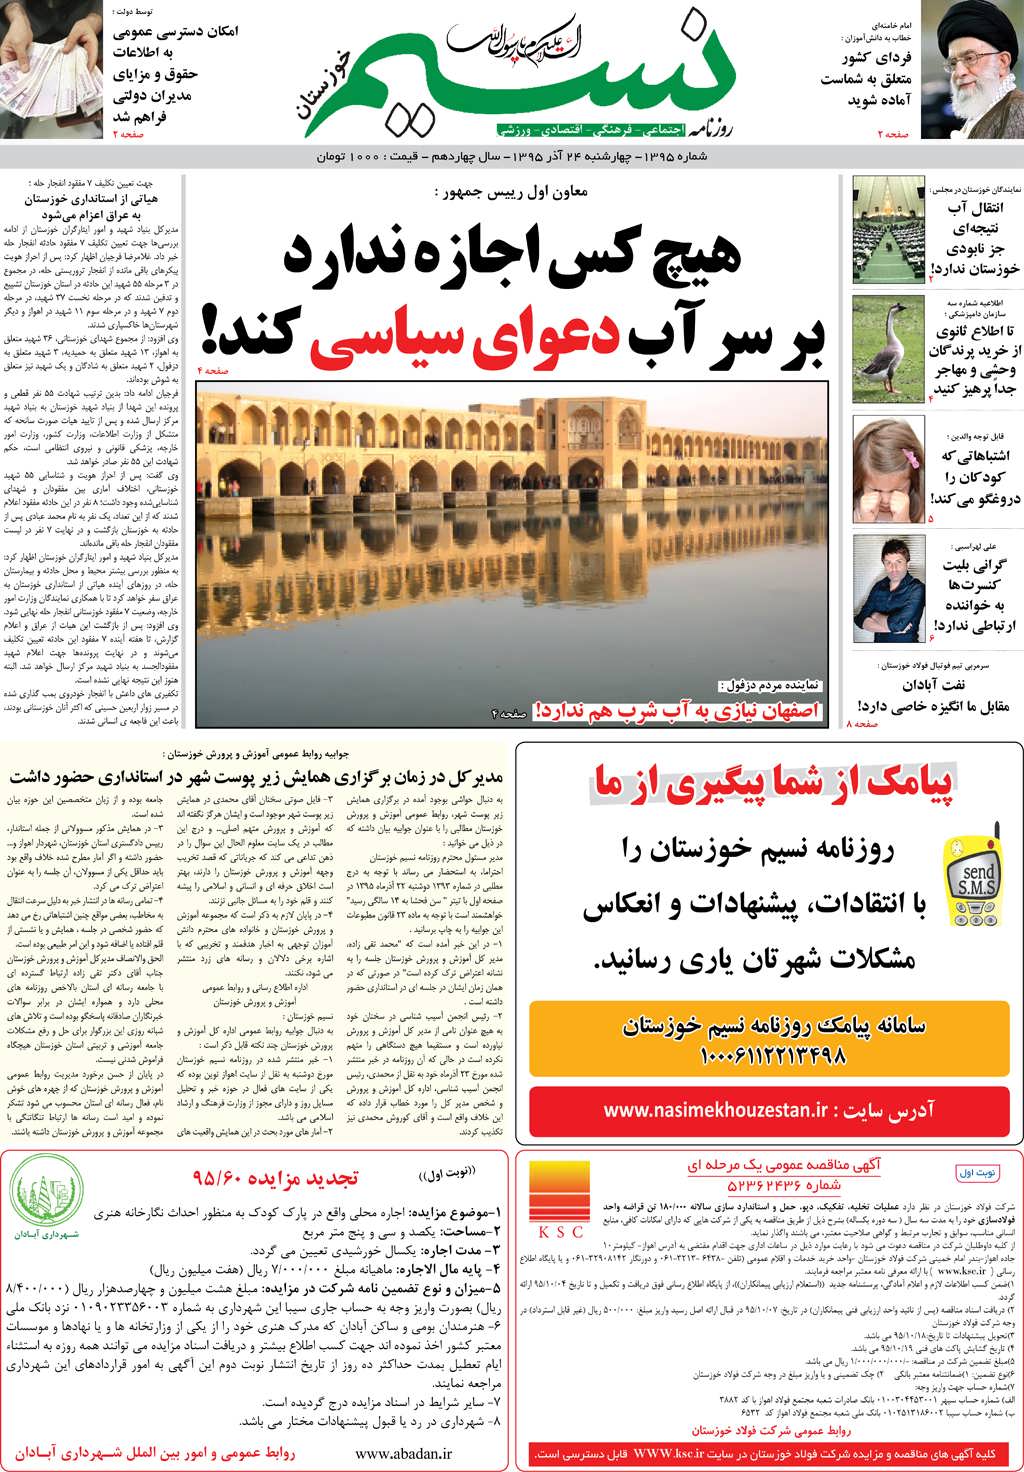 صفحه اصلی روزنامه نسیم شماره 1395